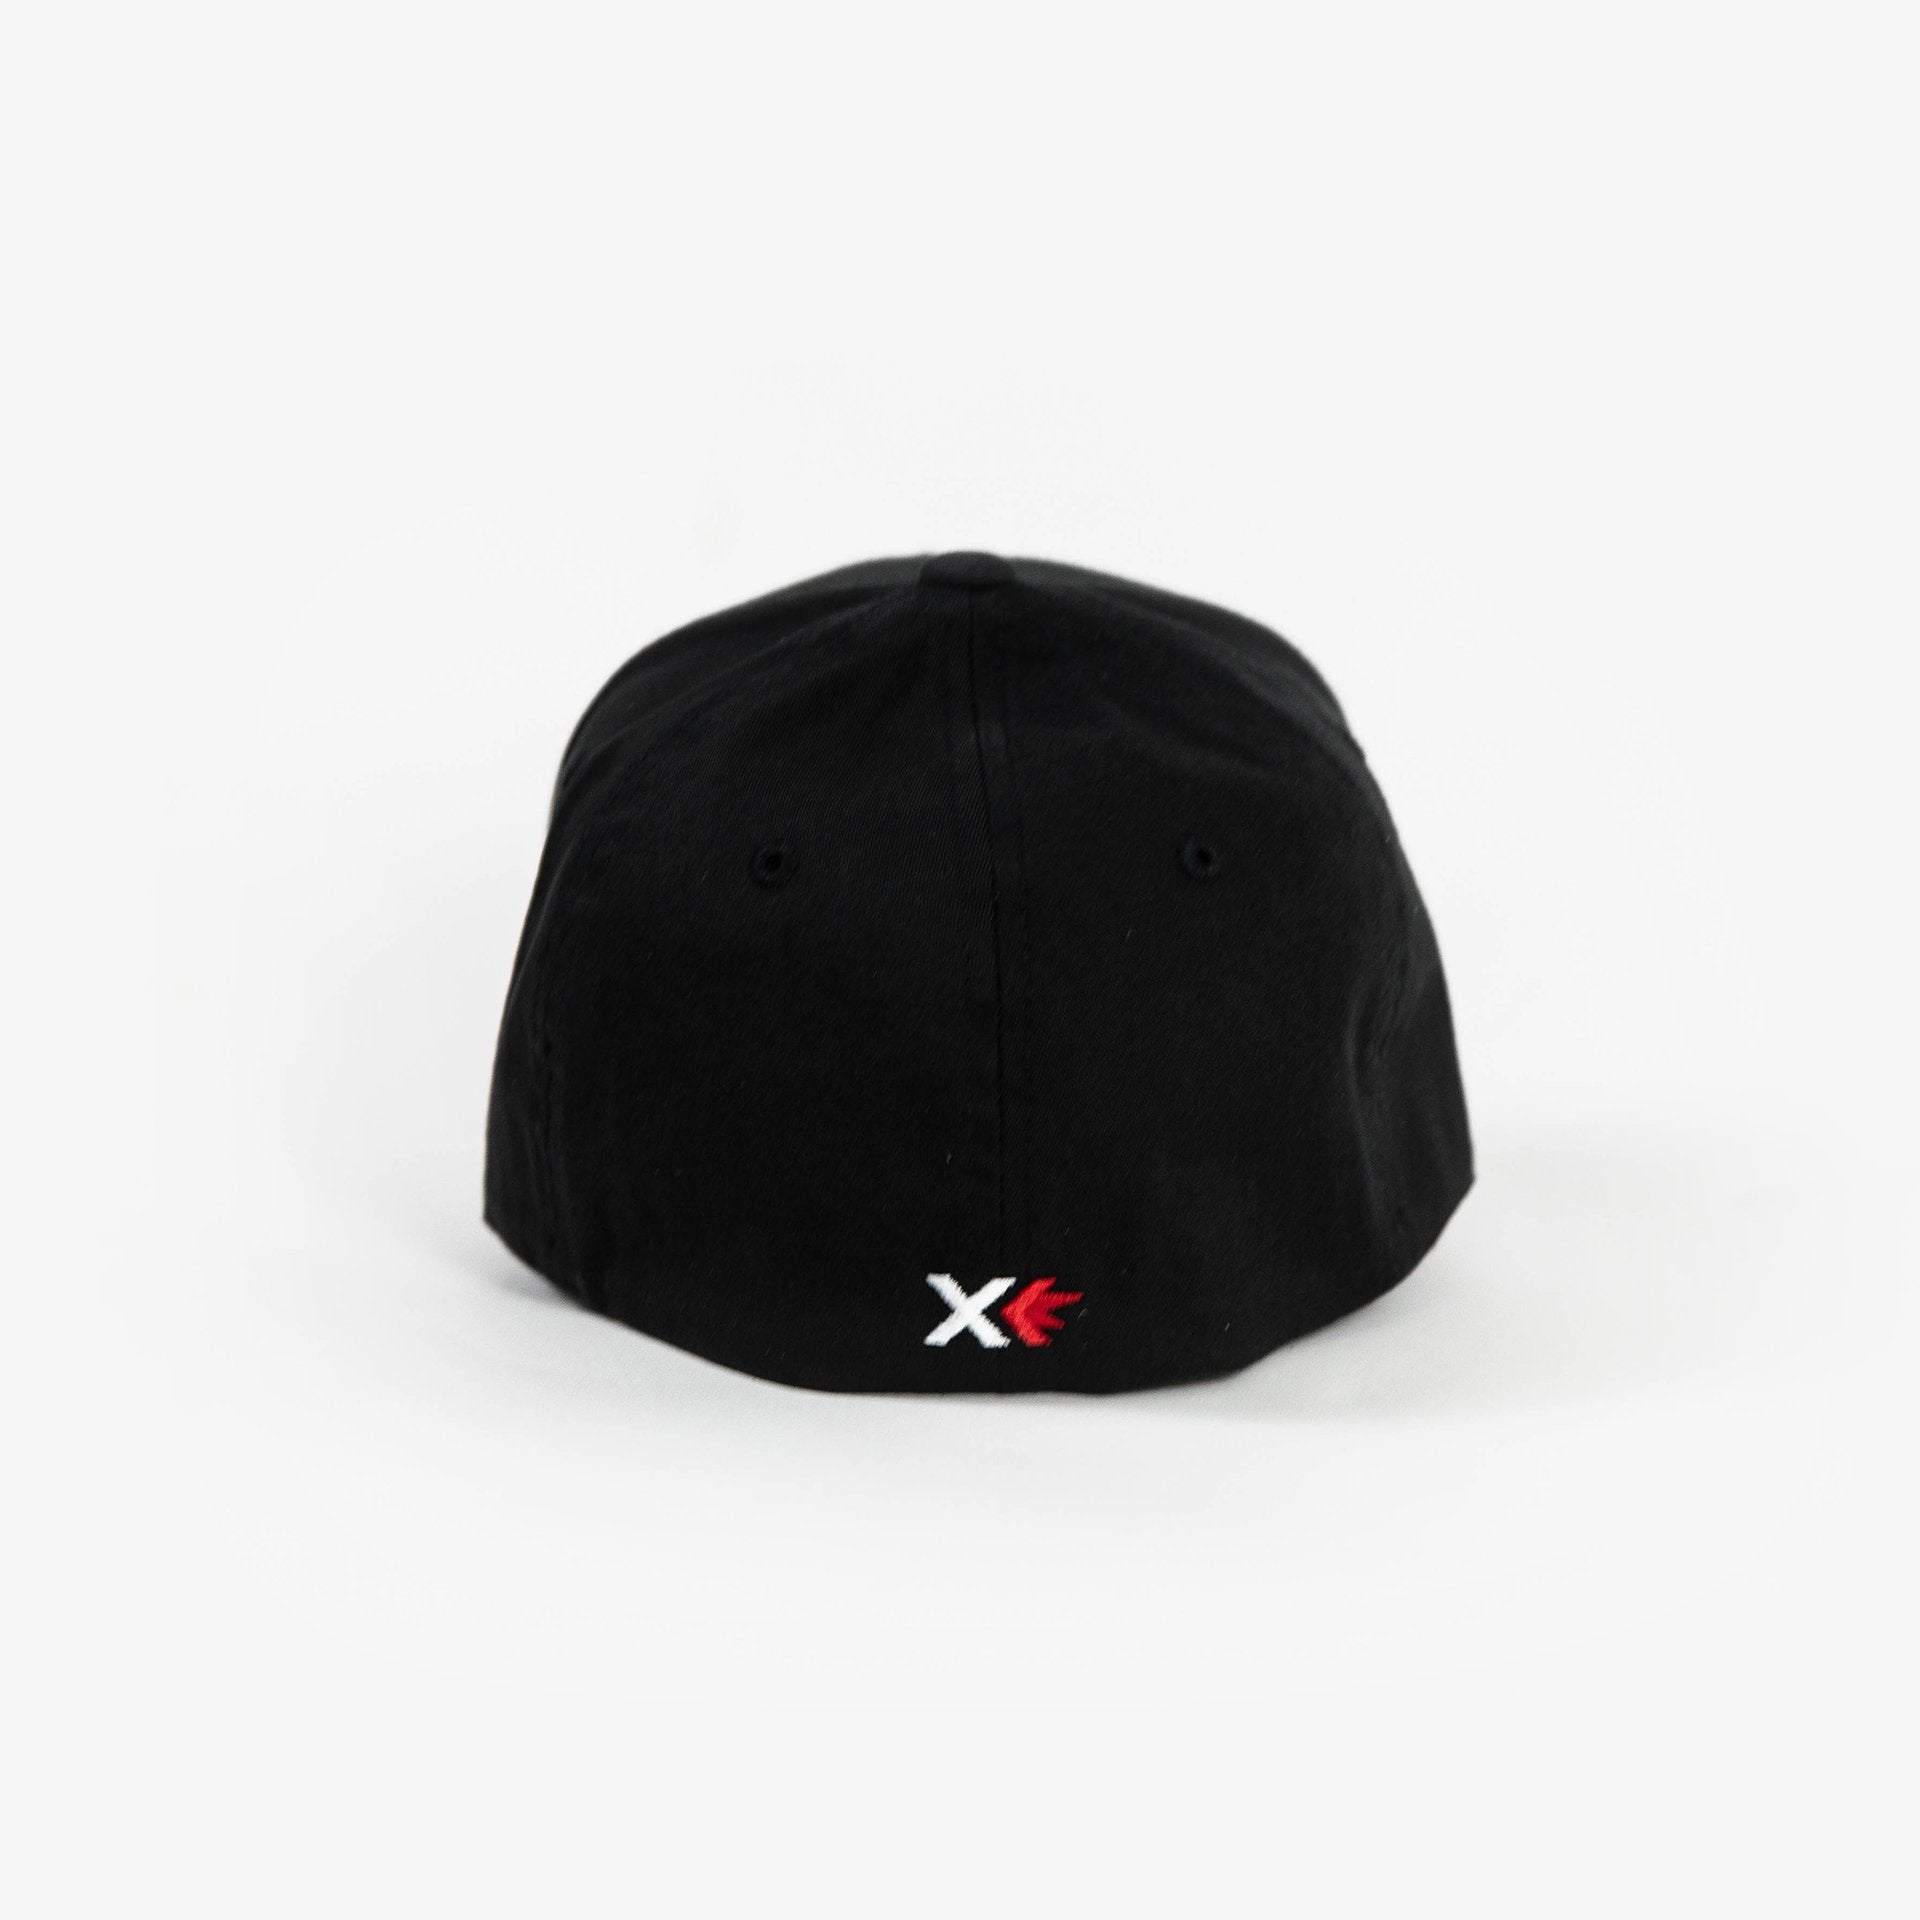 Sparx Flexfit Premium Hat